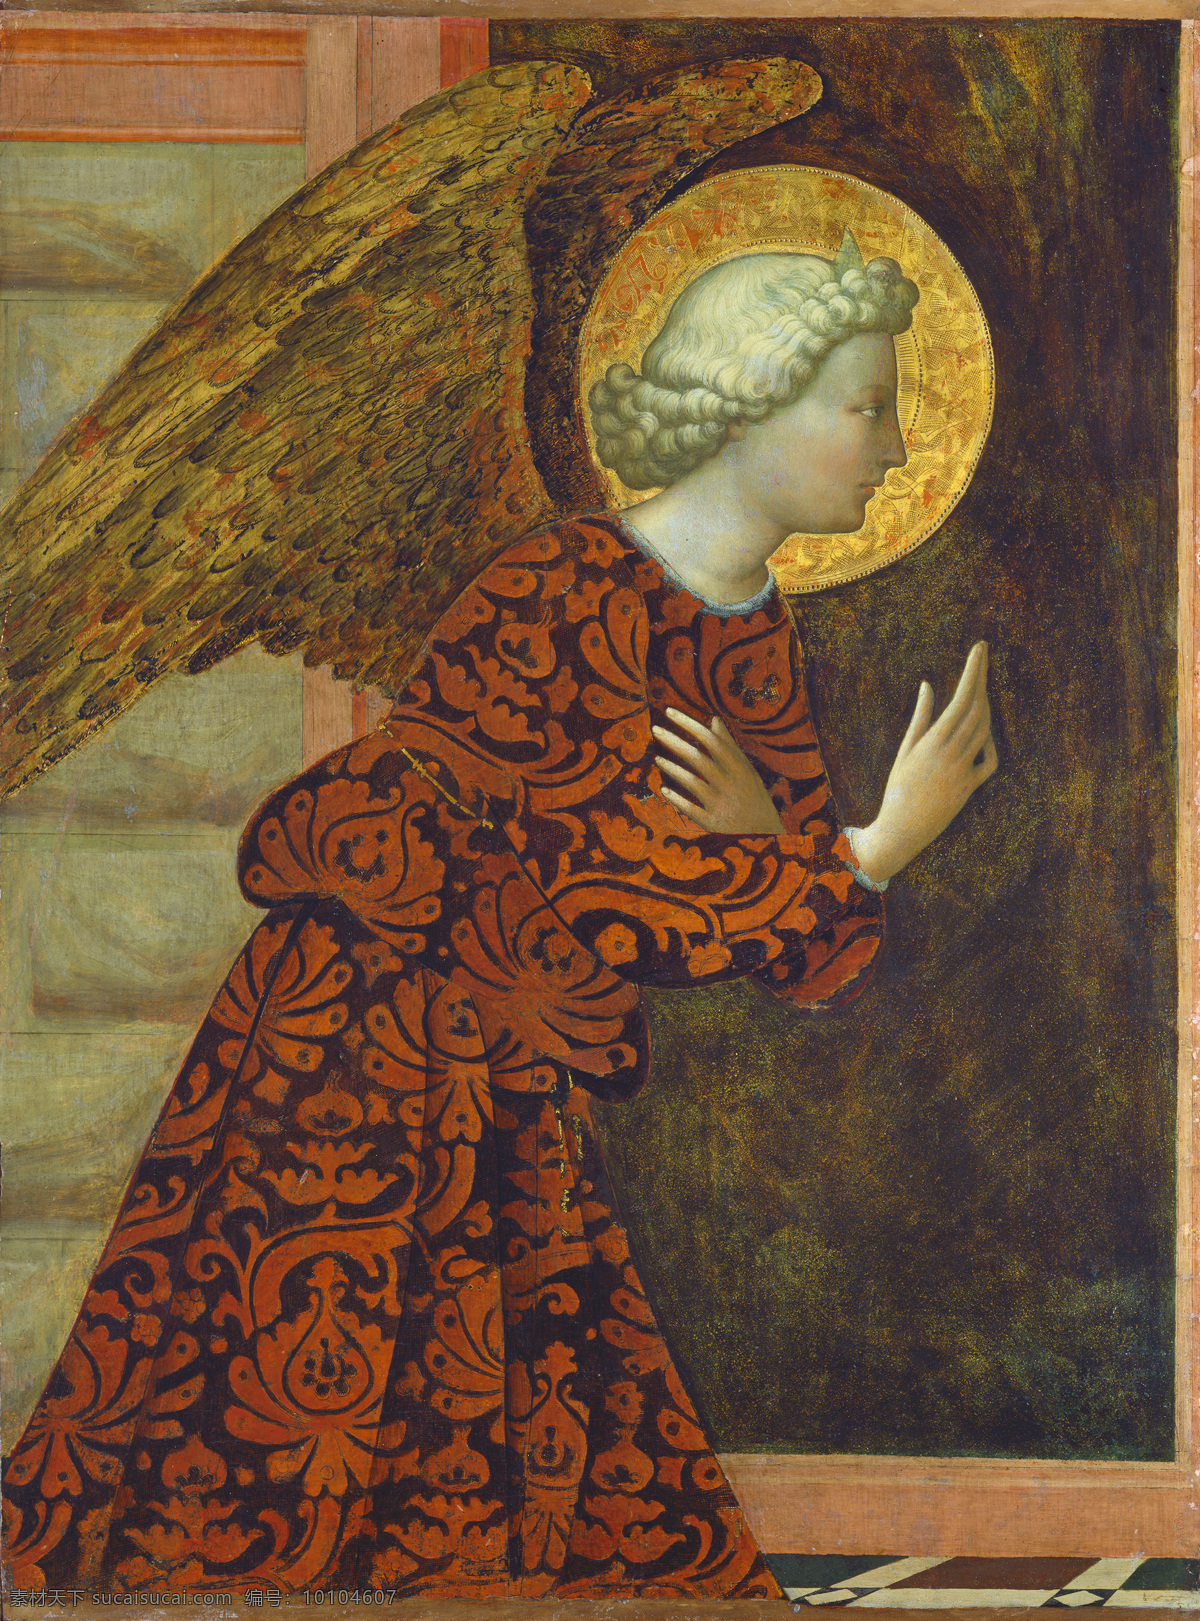 圣经故事 大天使加百列 降临人间 虔诚 报喜油画 局部 古典油画 油画 文化艺术 绘画书法